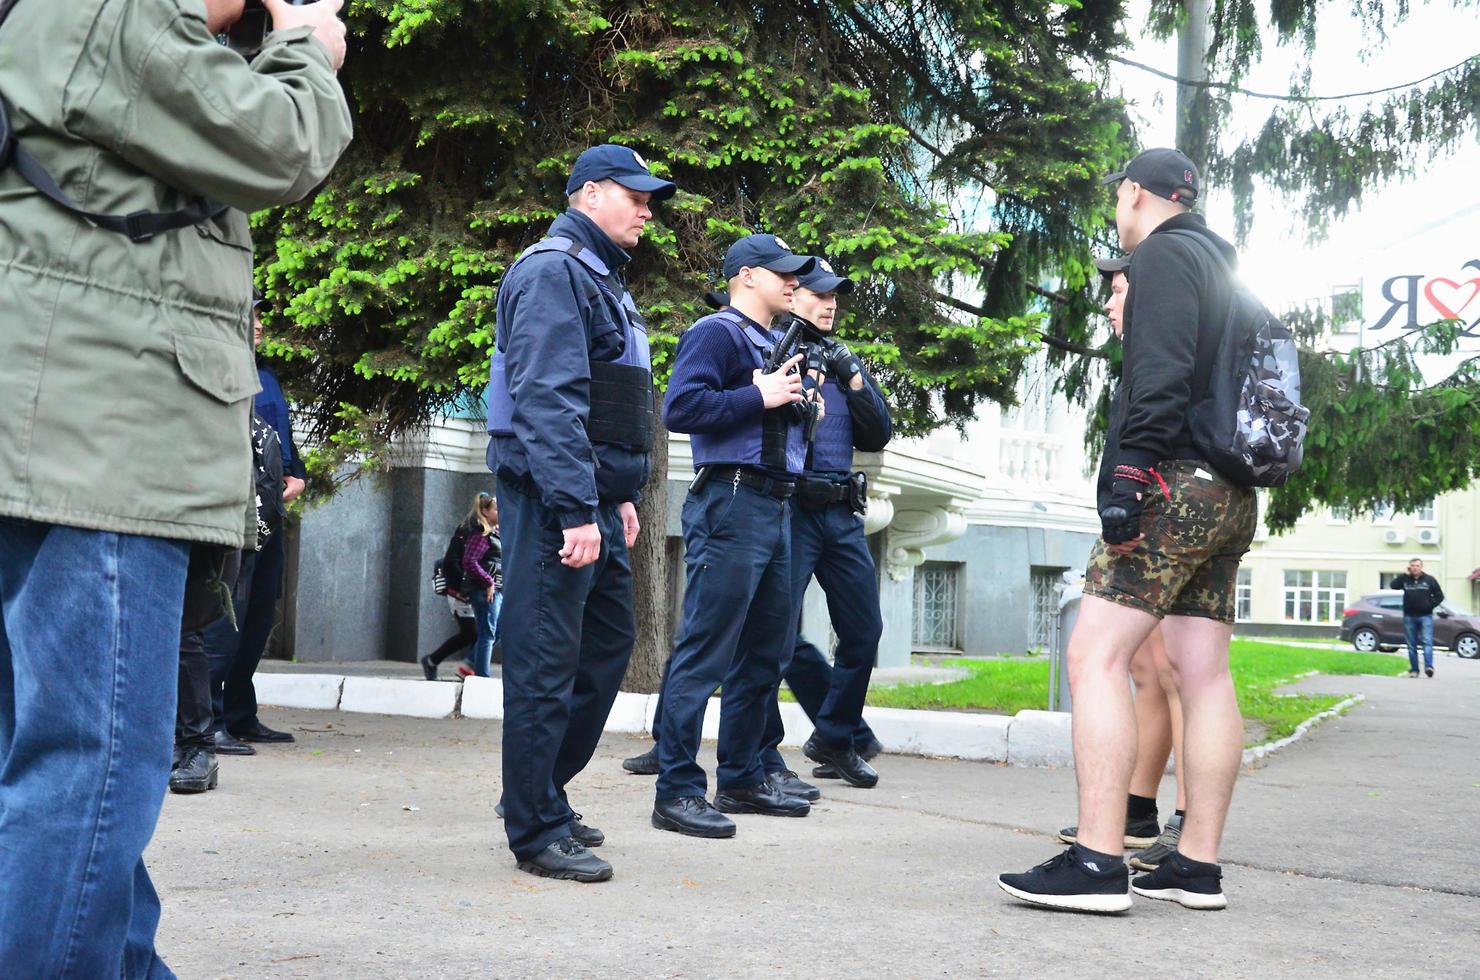 kharkov. ukraina - Maj 17, 2022 konflikt mellan de polis och de organisation av nazisterna och patrioter under de spridning av de först HBTQ verkan i kharkov foto